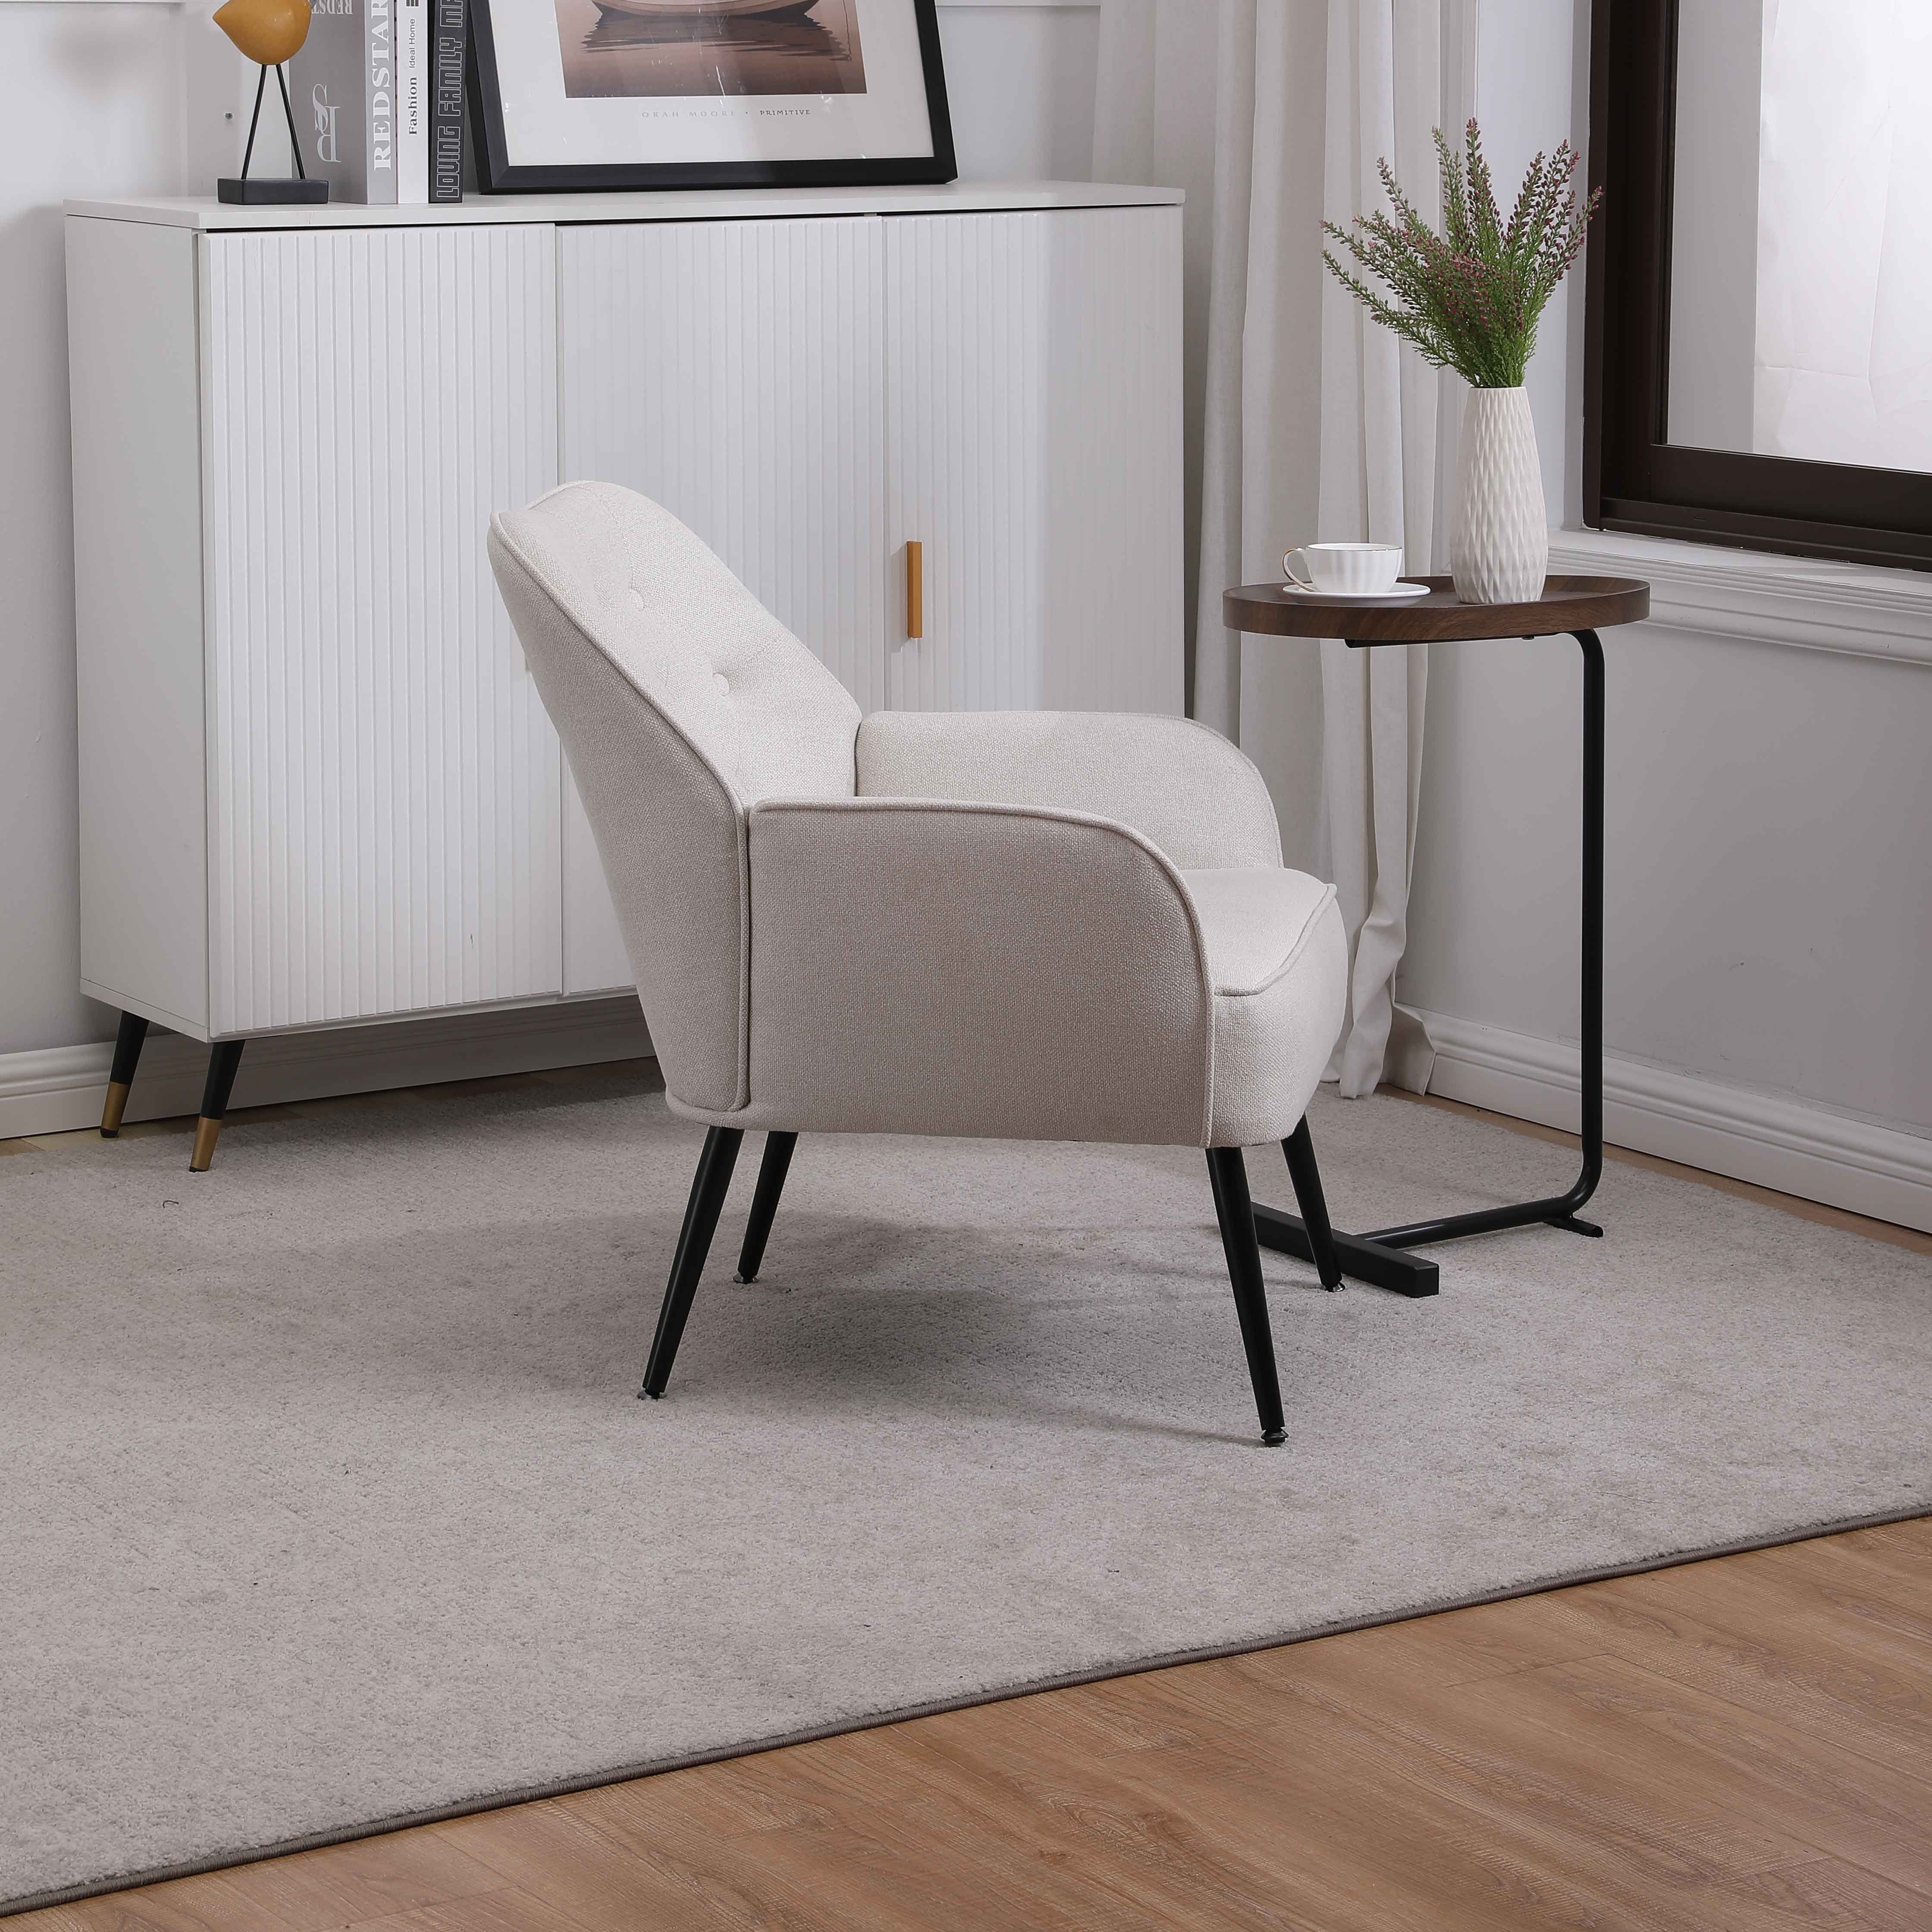 REDOM Loungesessel Relaxsessel Einzelsessel, Stuhl), Fernsehsessel Einzelsofa Stuhl weiß Polstersessel, (Büro Kaffee Gepolsterte Metallbeinen Freizeit mit